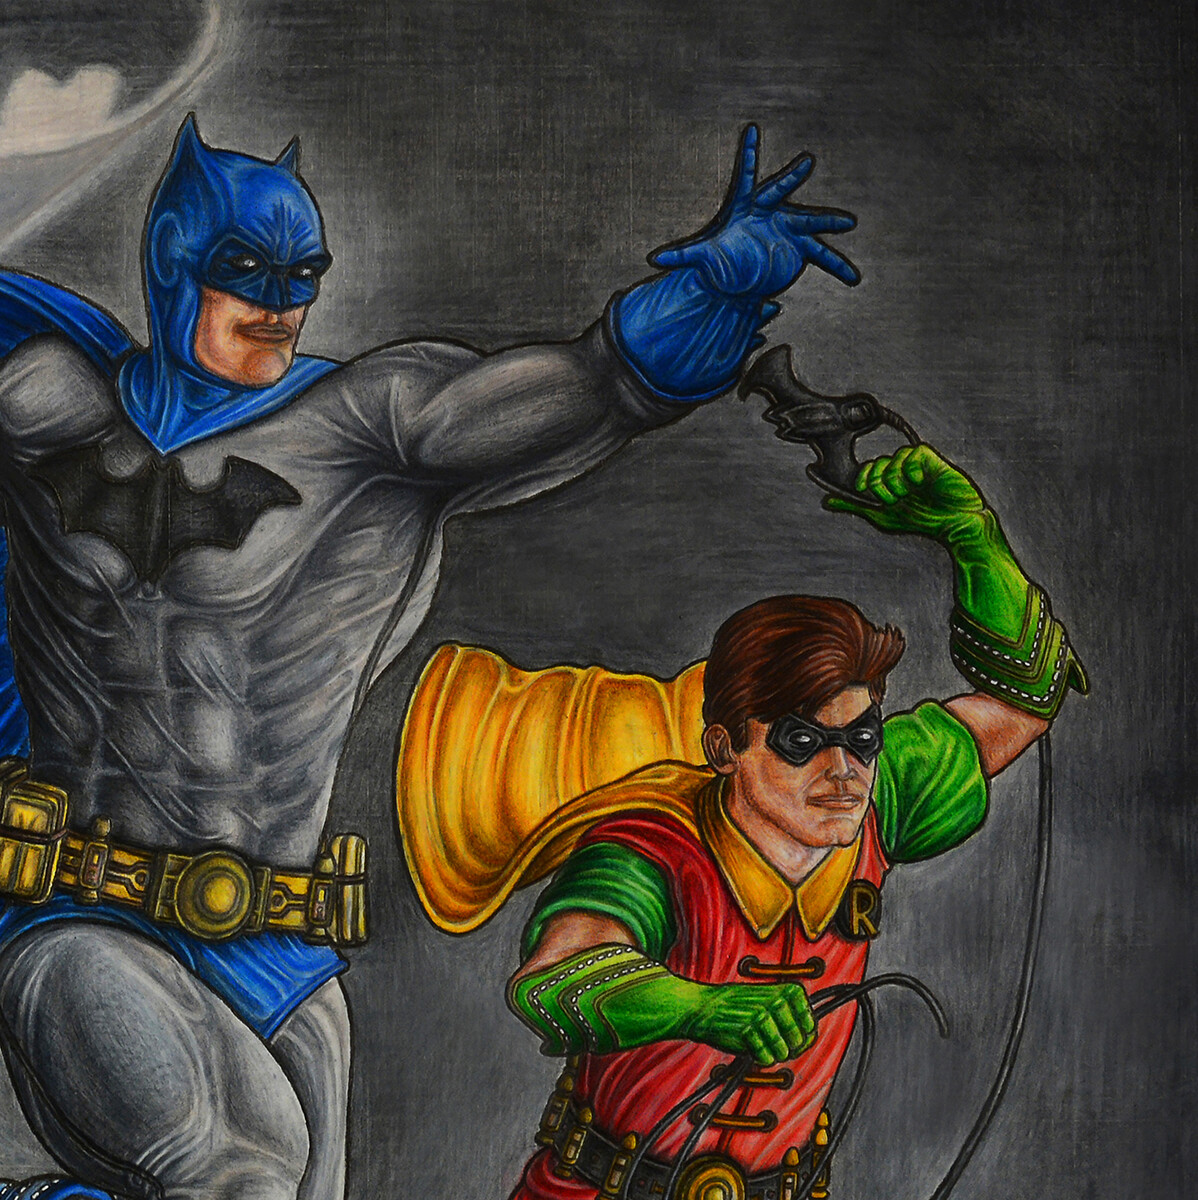 ArtStation - Batman and Robin at night colored drawing